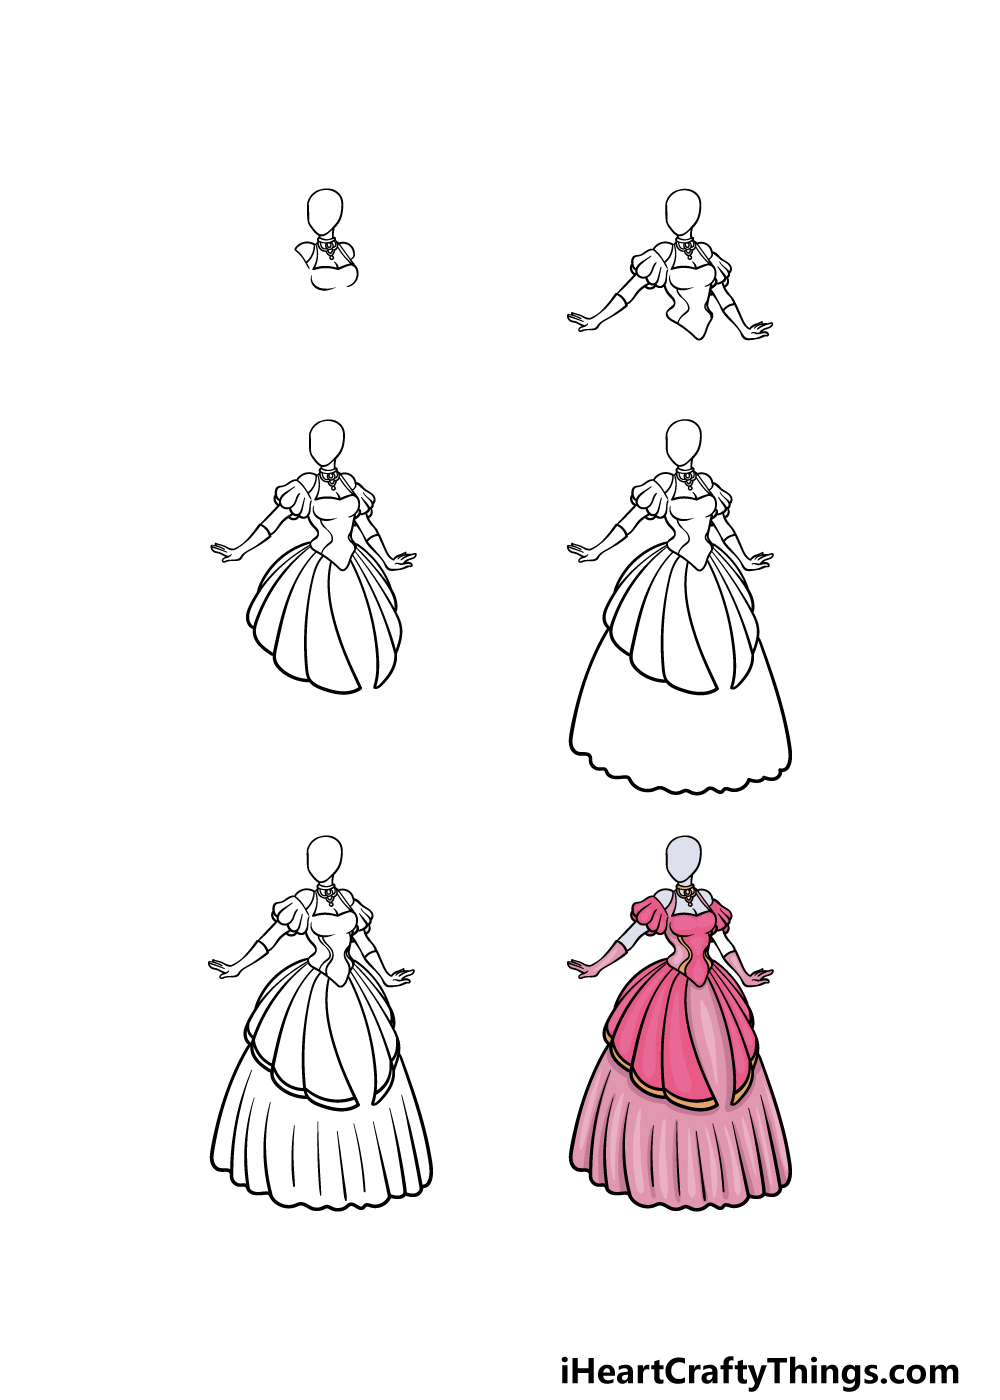 How to Draw a Dress Design - Really Easy Drawing Tutorial-saigonsouth.com.vn